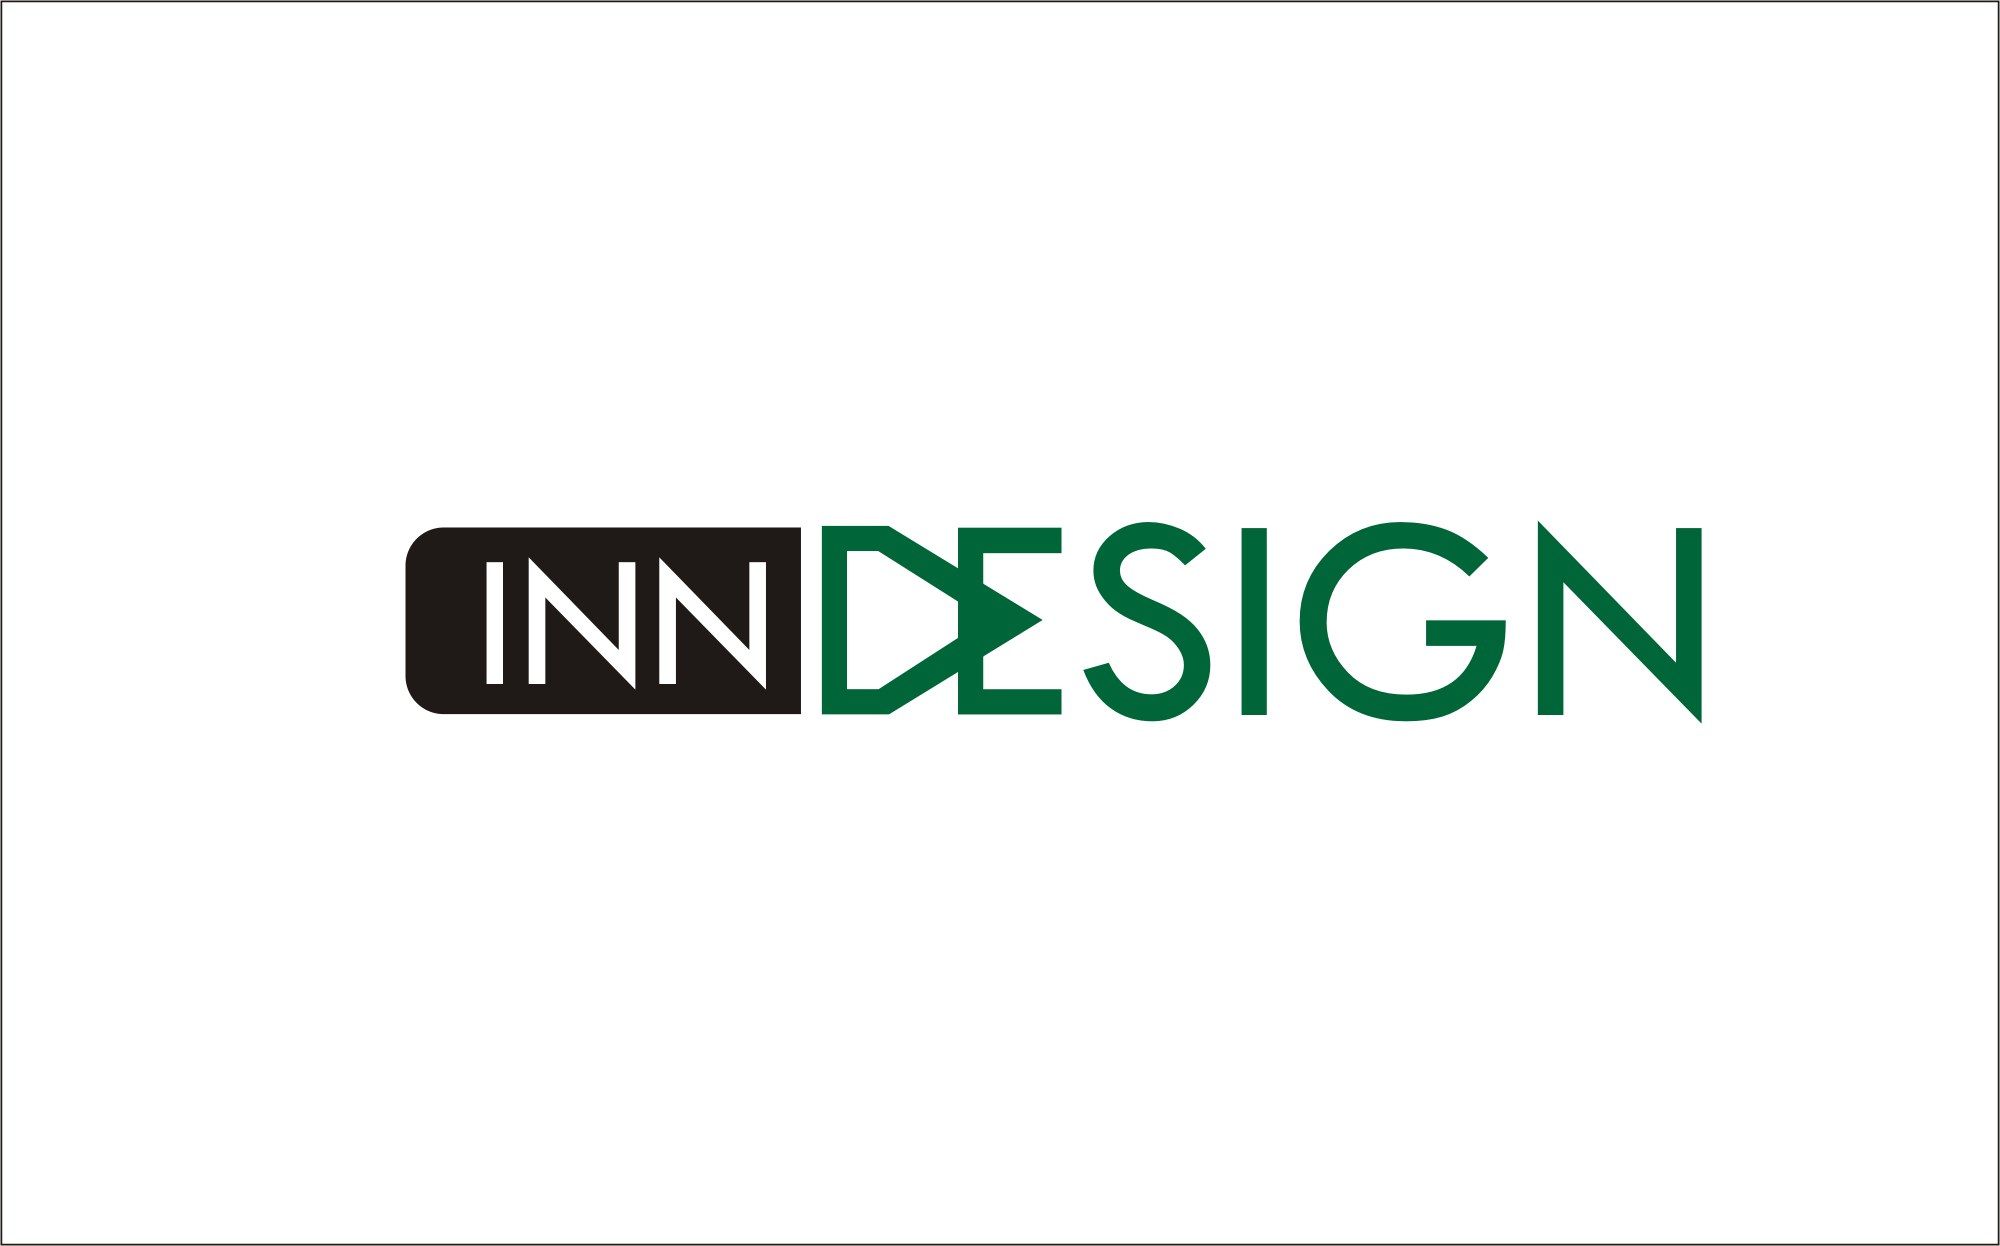 Логотип для веб портала о дизайне и архитектуре - дизайнер Nik_Vadim